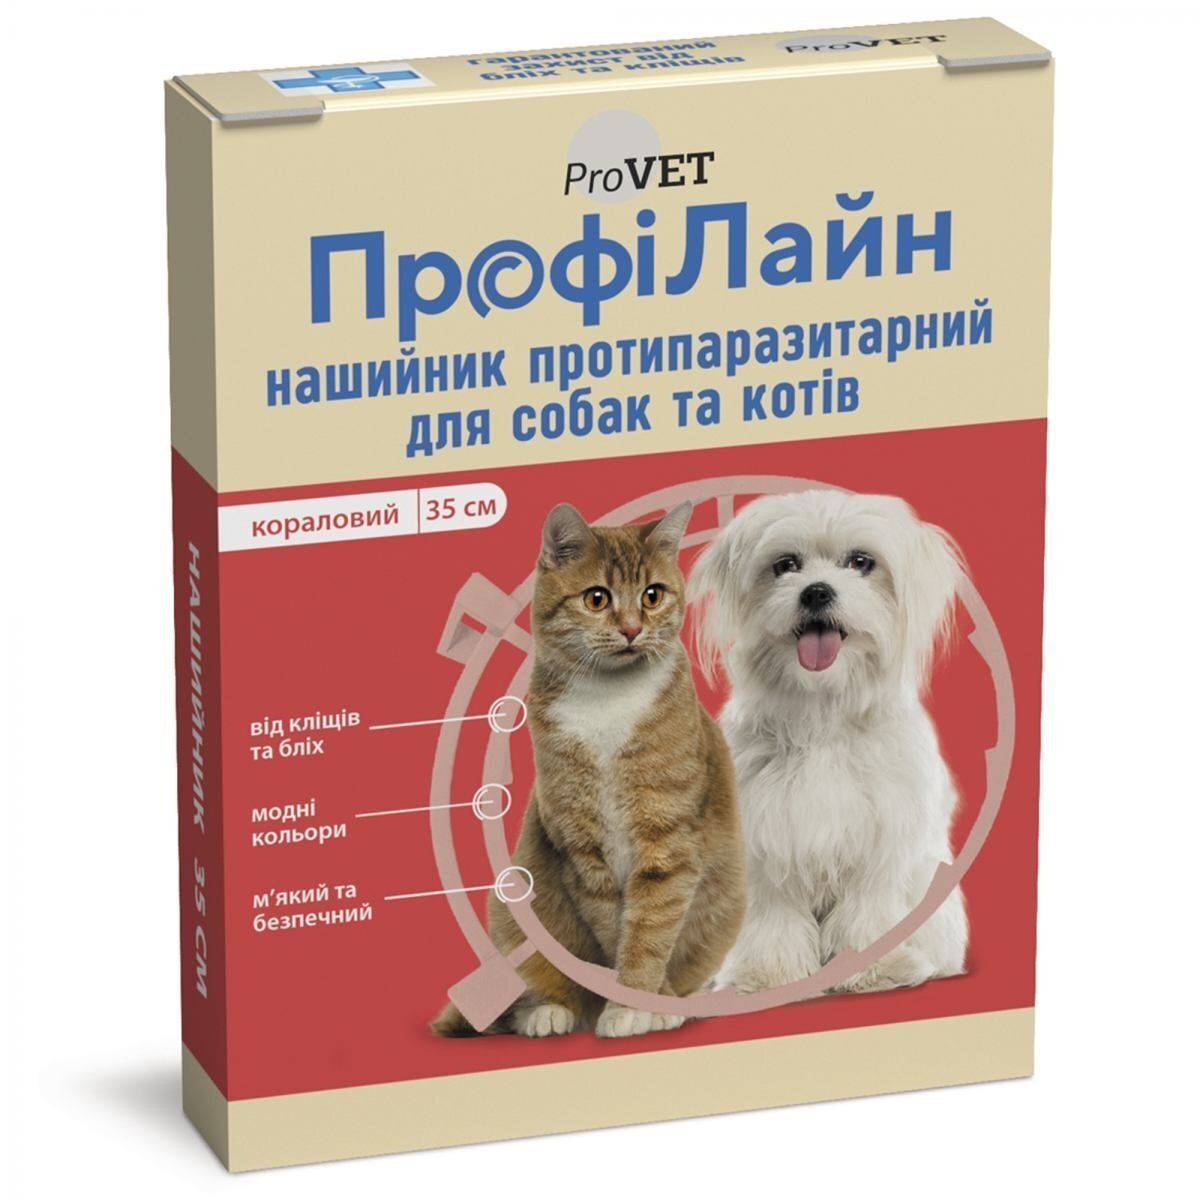 Ошейник противопаразитарный ProVET ПрофиЛайн для кошек и собак, 35 см, коралловый фото 